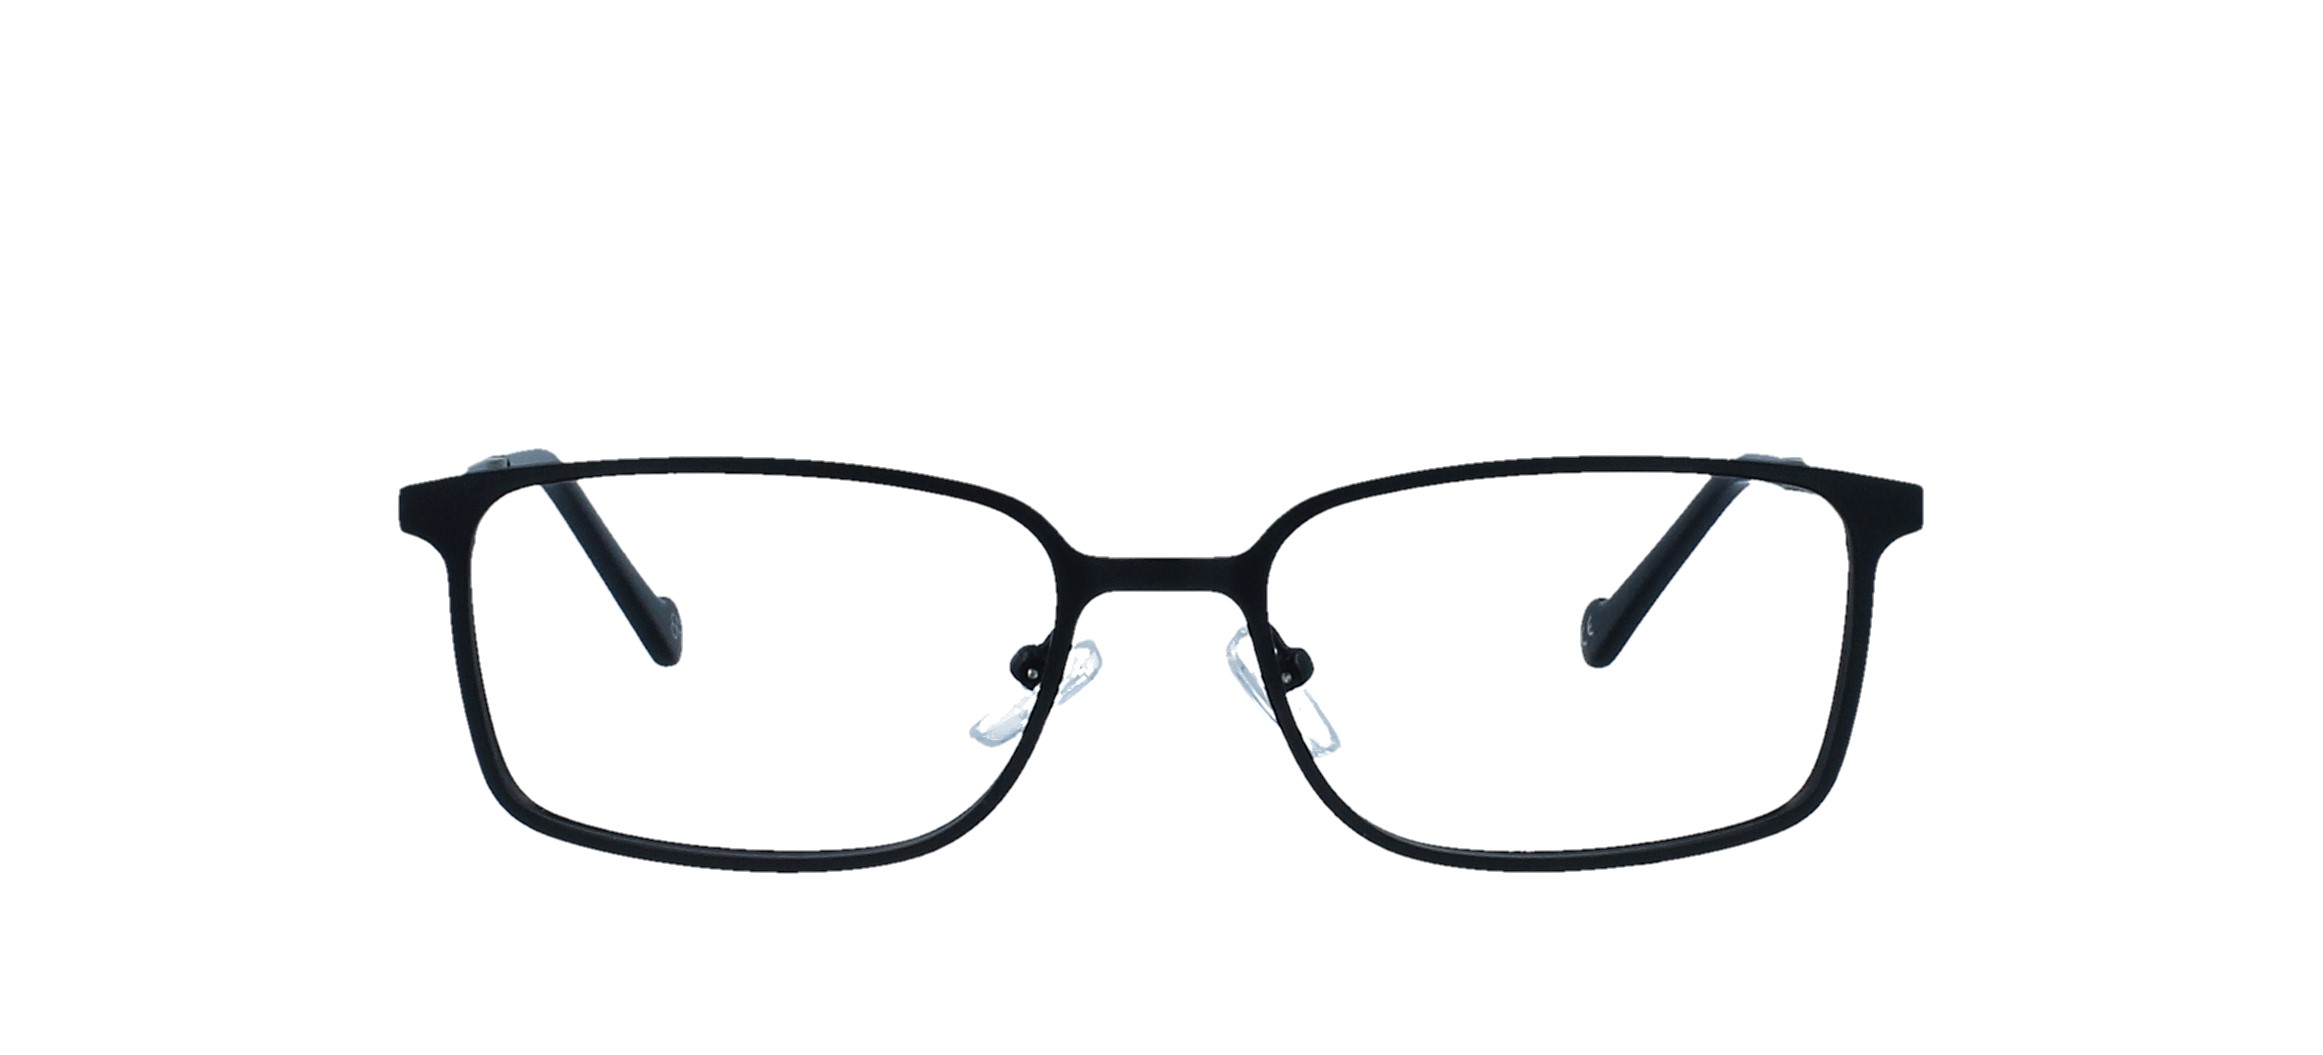 All Prescription Glasses Frames Online Execuspecs